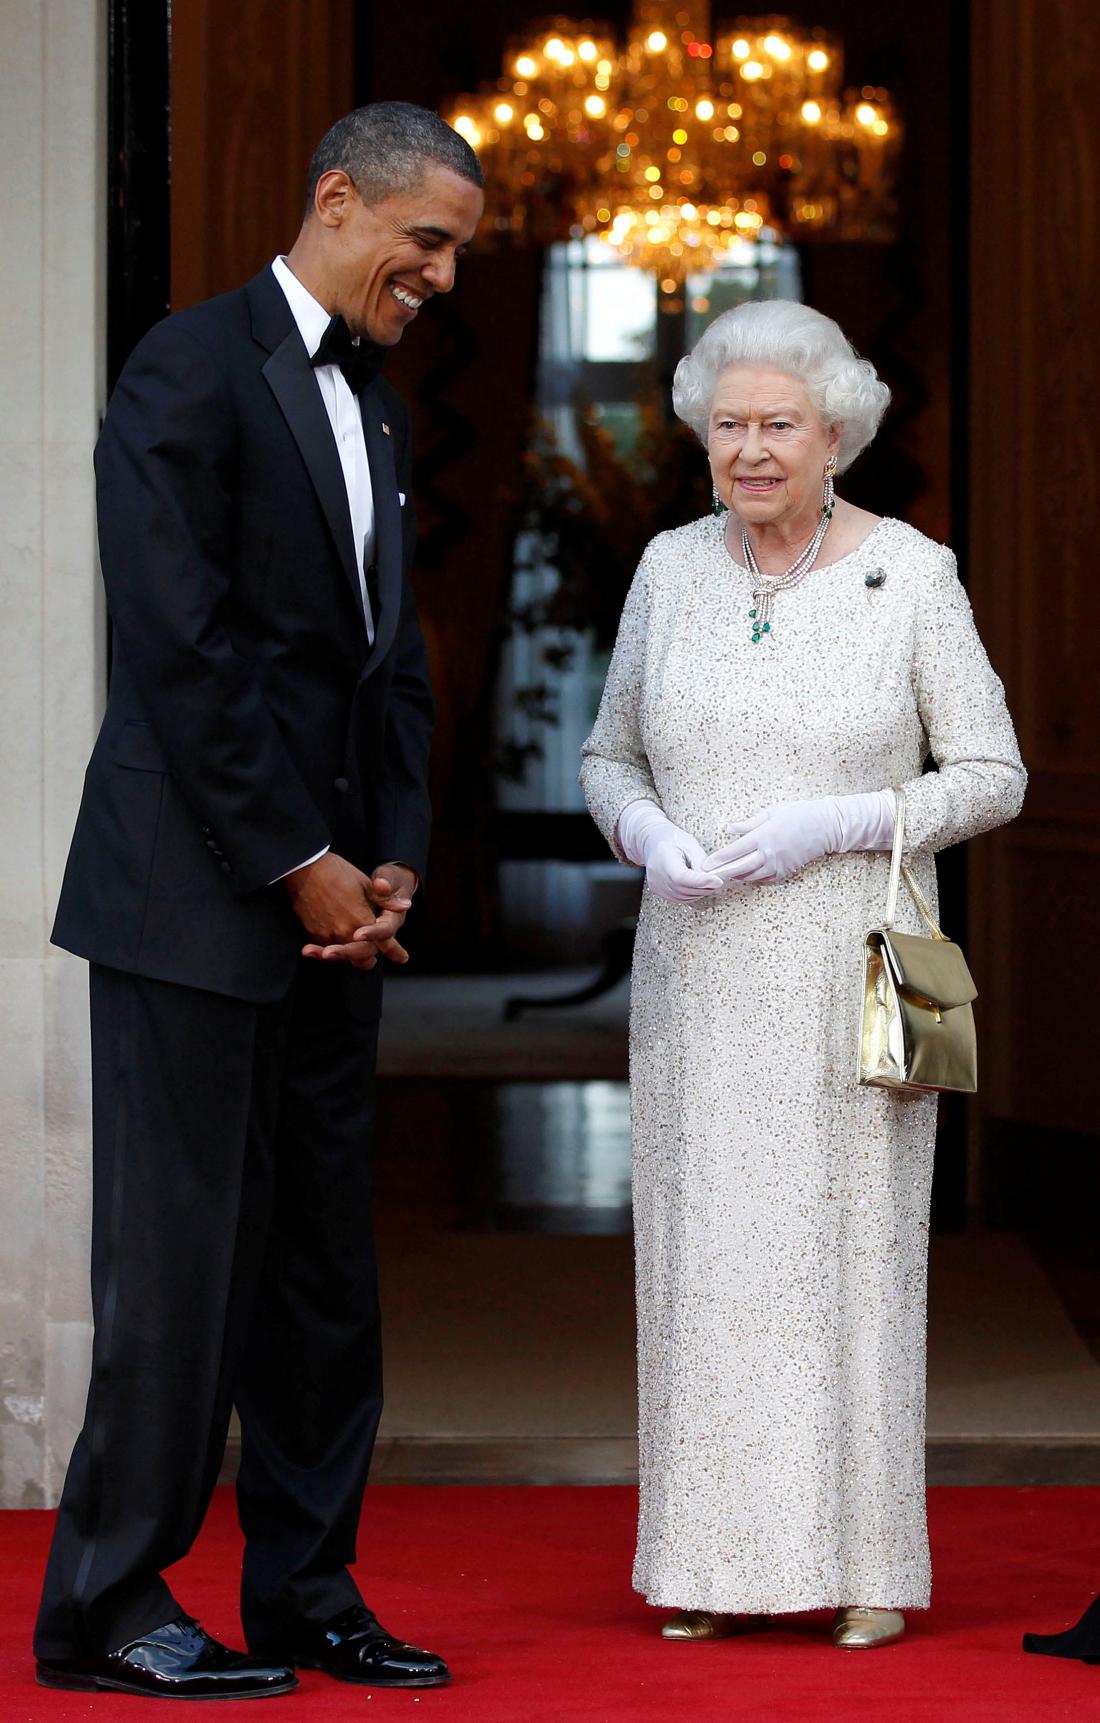 Z nekdanjim ameriškim predsednikom Barackom Obamo. Foto: Larry Downing/Reuters